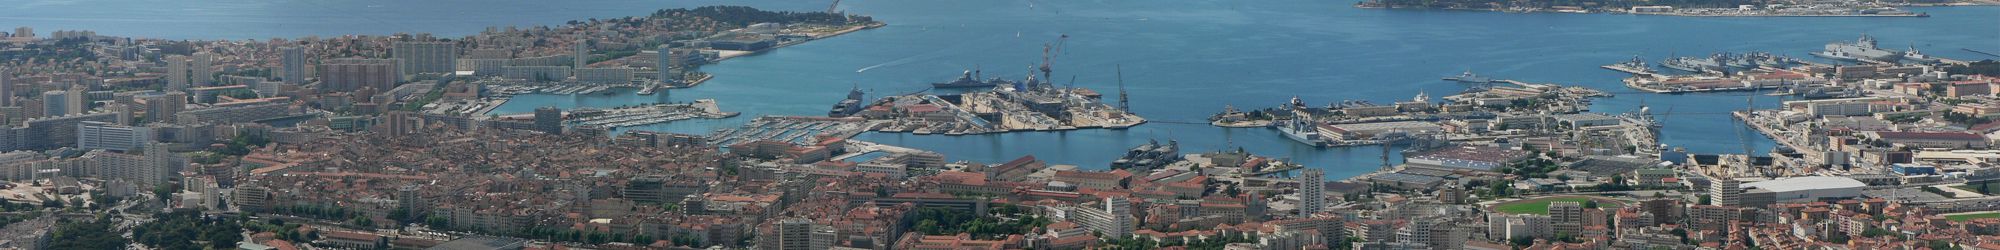 Vue panoramique de Toulon